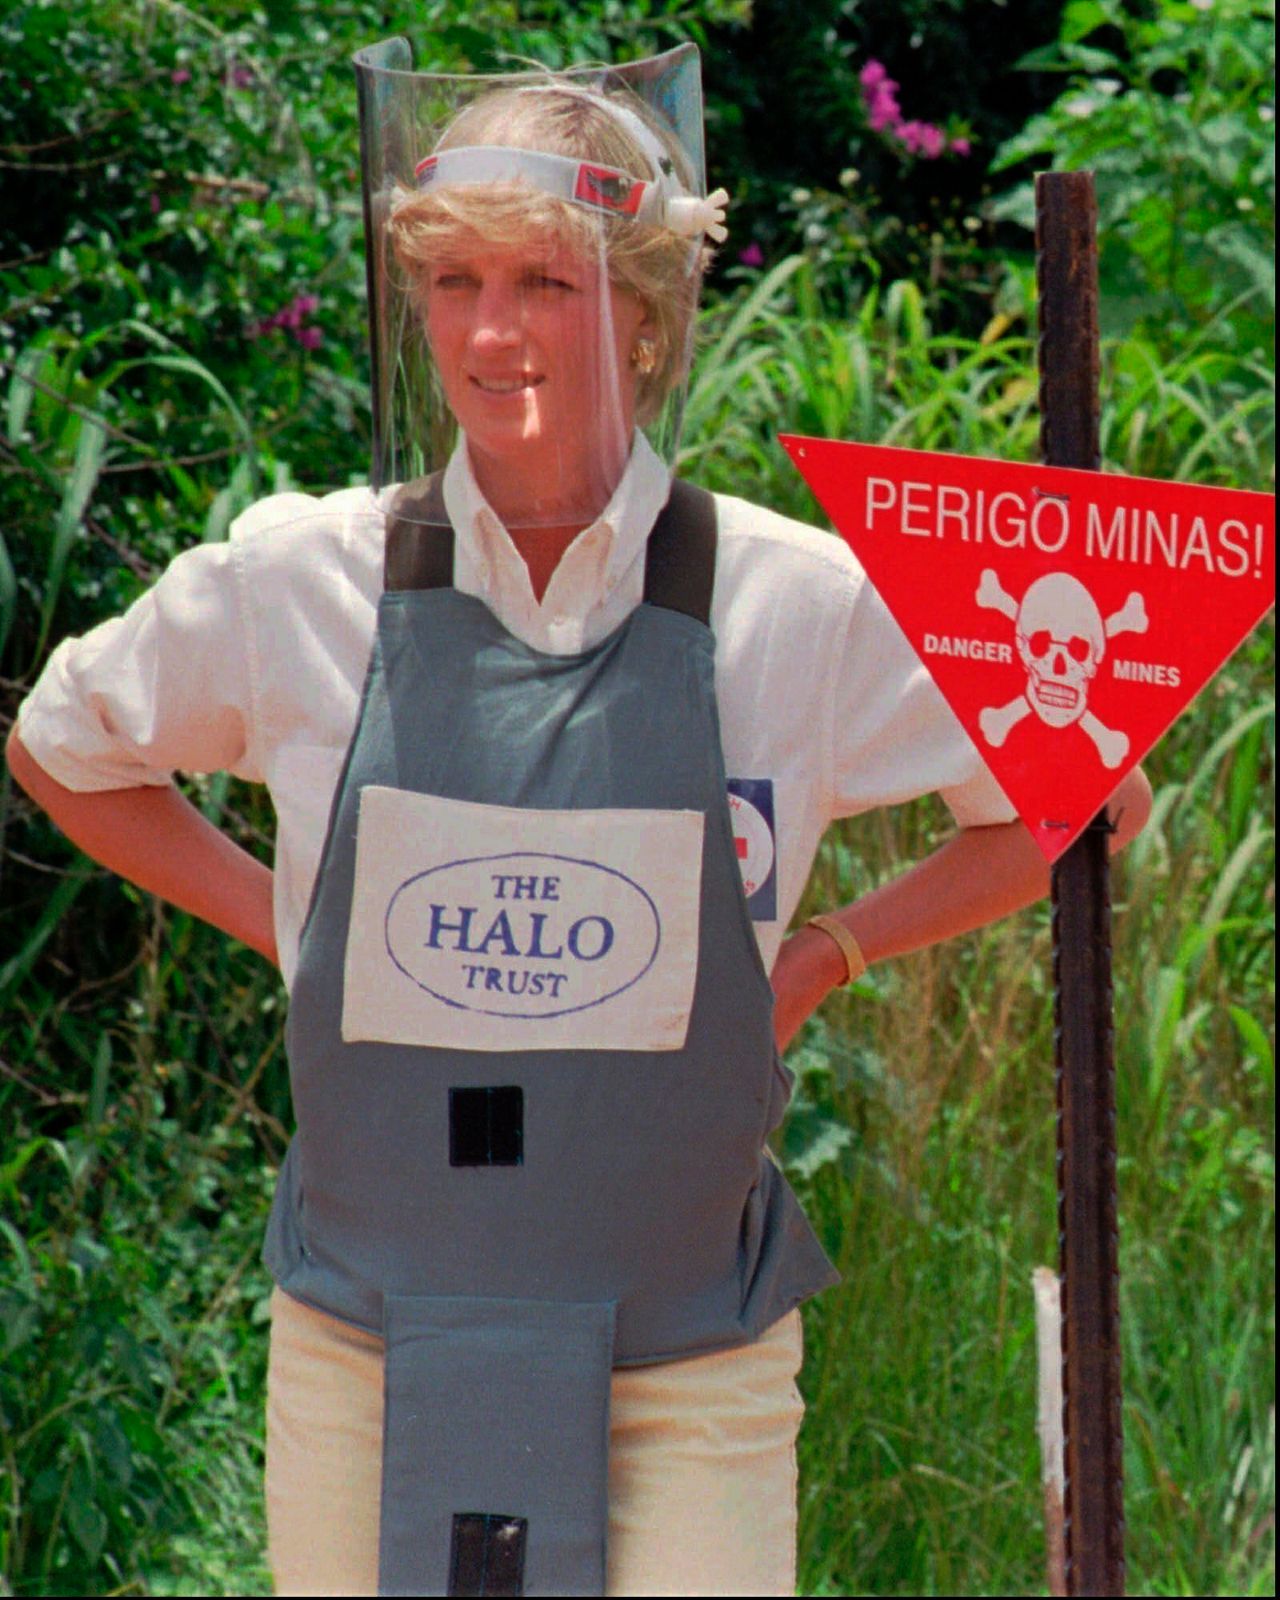 Η Νταϊάνα φοράει προστατευτικό εξοπλισμό την Τετάρτη 15 Ιανουαρίου 1997 κατά τη διάρκεια ενημέρωσης από τον βρετανικό οργανισμό σάρωσης ναρκοπεδίων Halo Trust στο Huambo, στην κεντρική Αγκόλα, μια από τις πιο πυκνά ναρκοθετημένες περιοχές της χώρας.